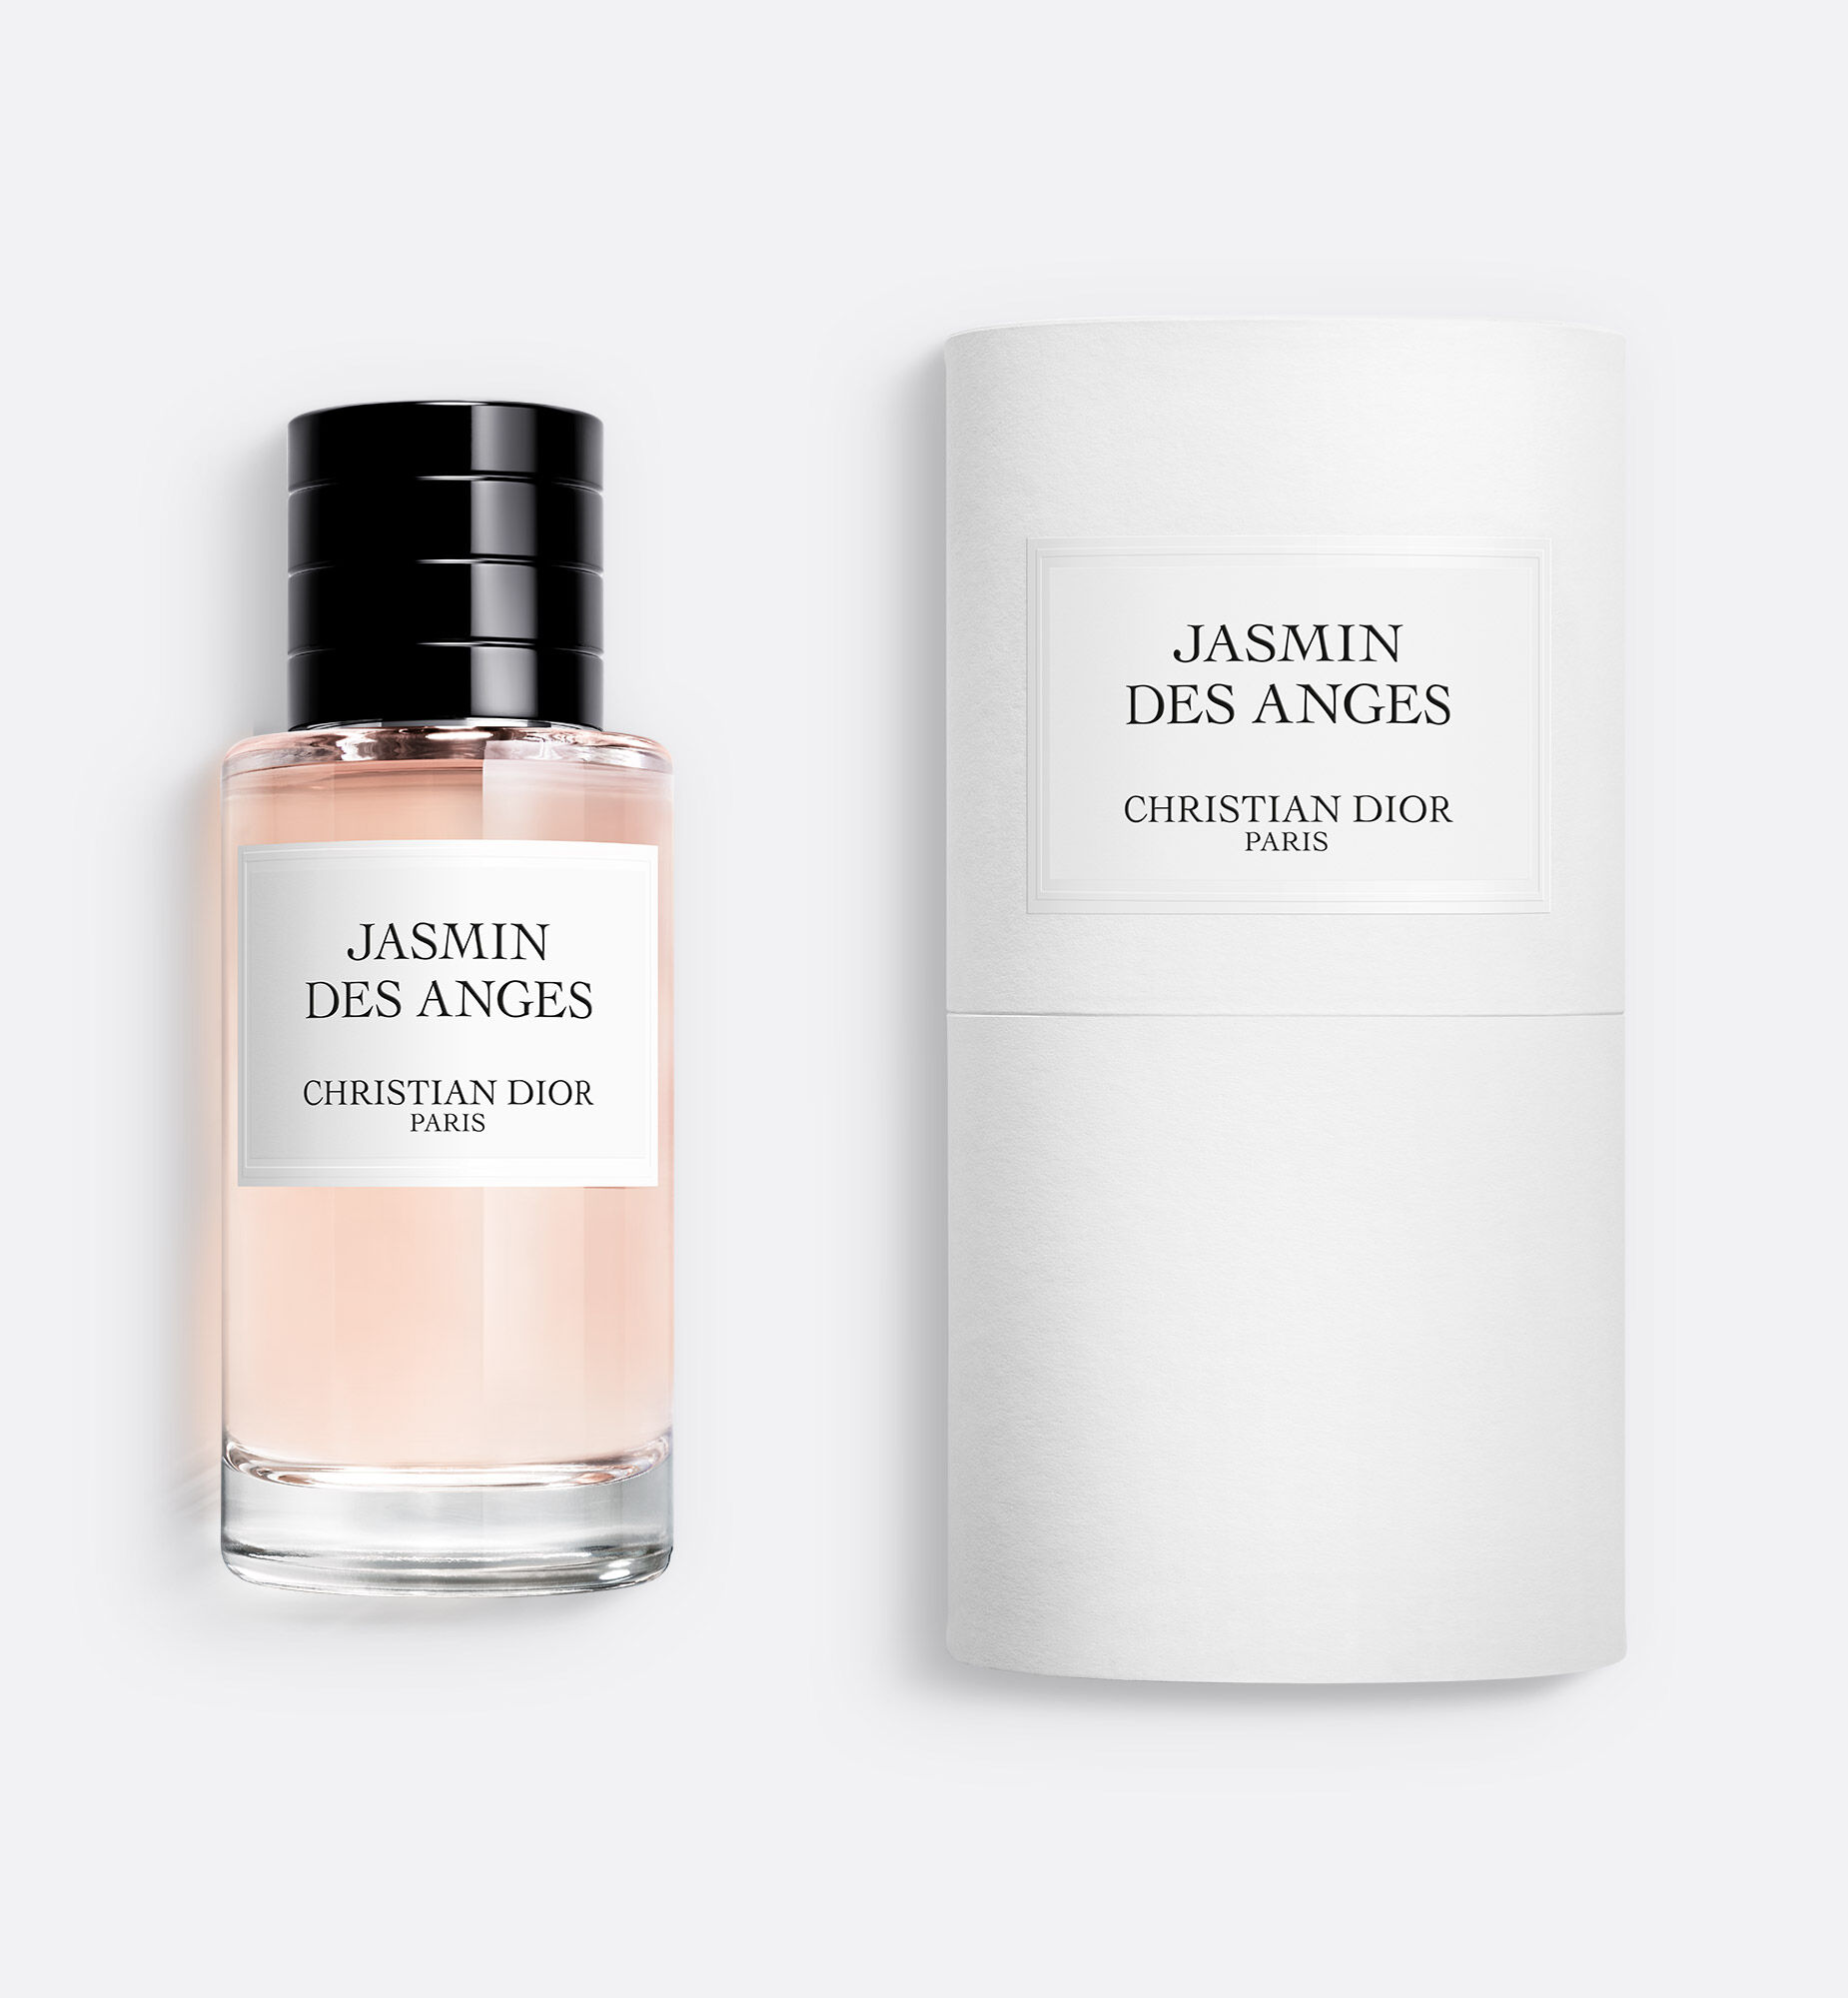 Jasmin des Anges Fragrance: floral-fruity fragrance drenched in 